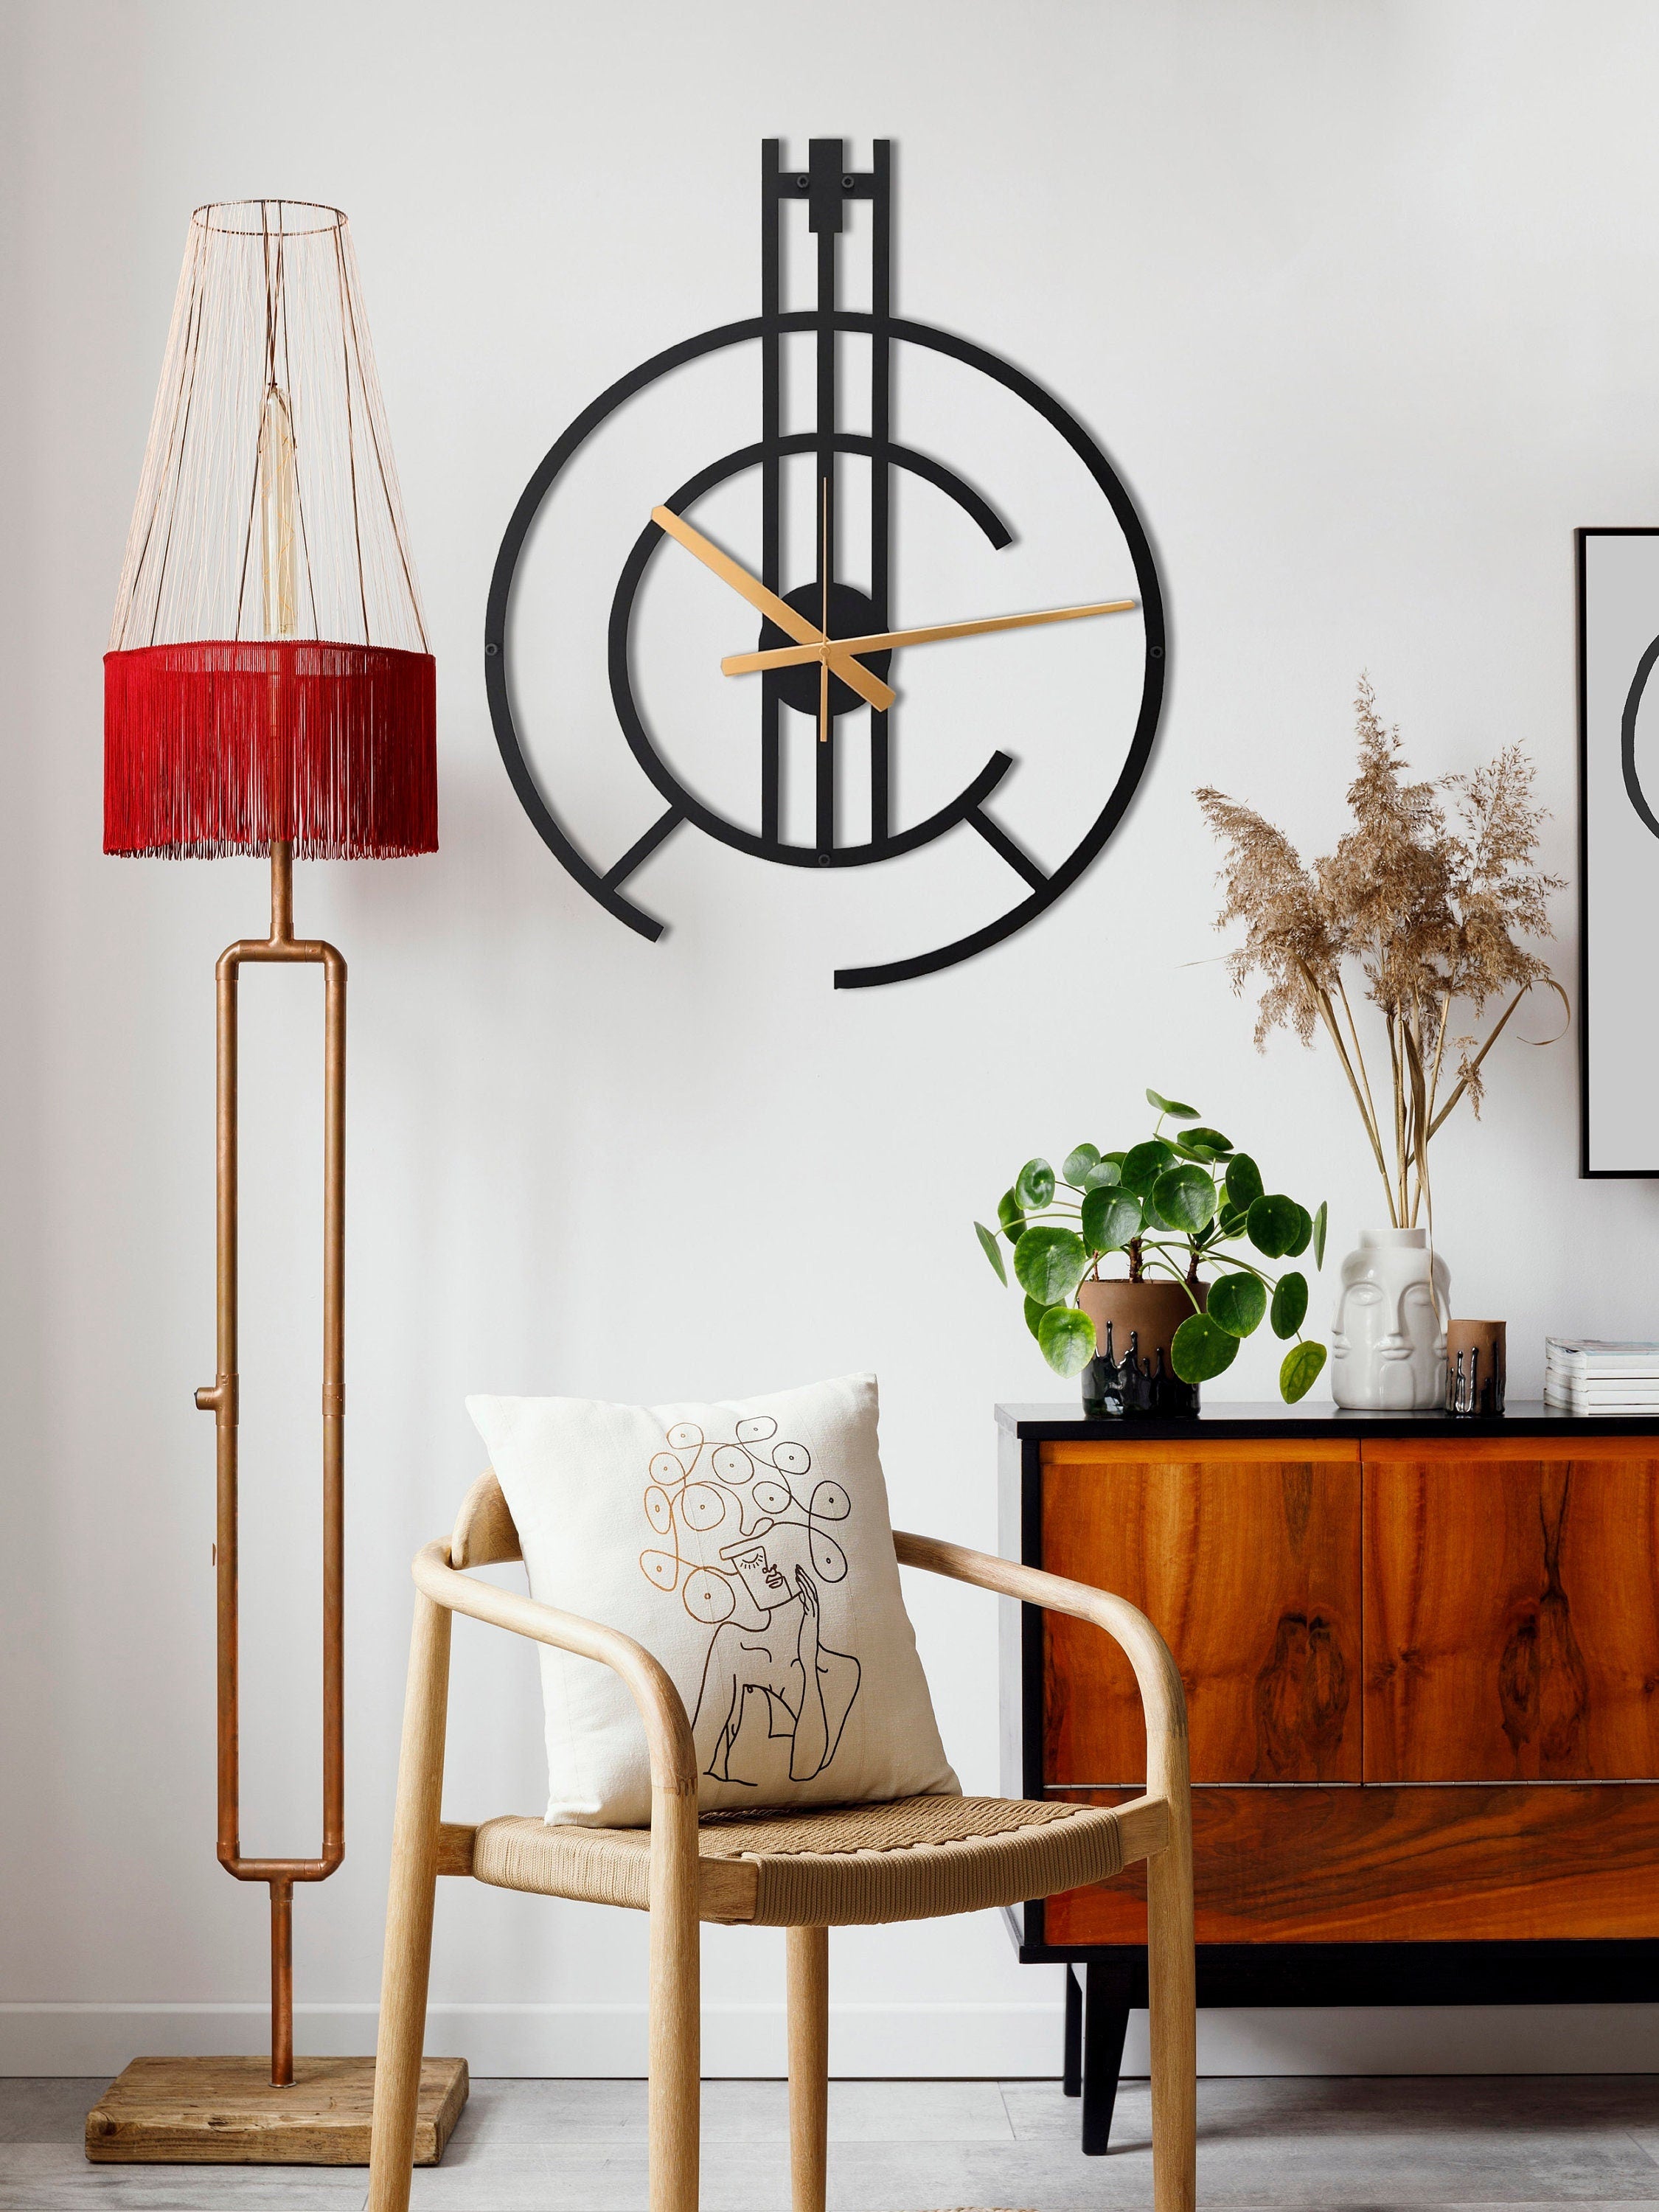 Minimalist Clock, Modern Wall Clock, Unique Wall Clock, Silent Wall Clock, Metal Wall Clock, Living Room Black Wall Clock, Clocks For Wall